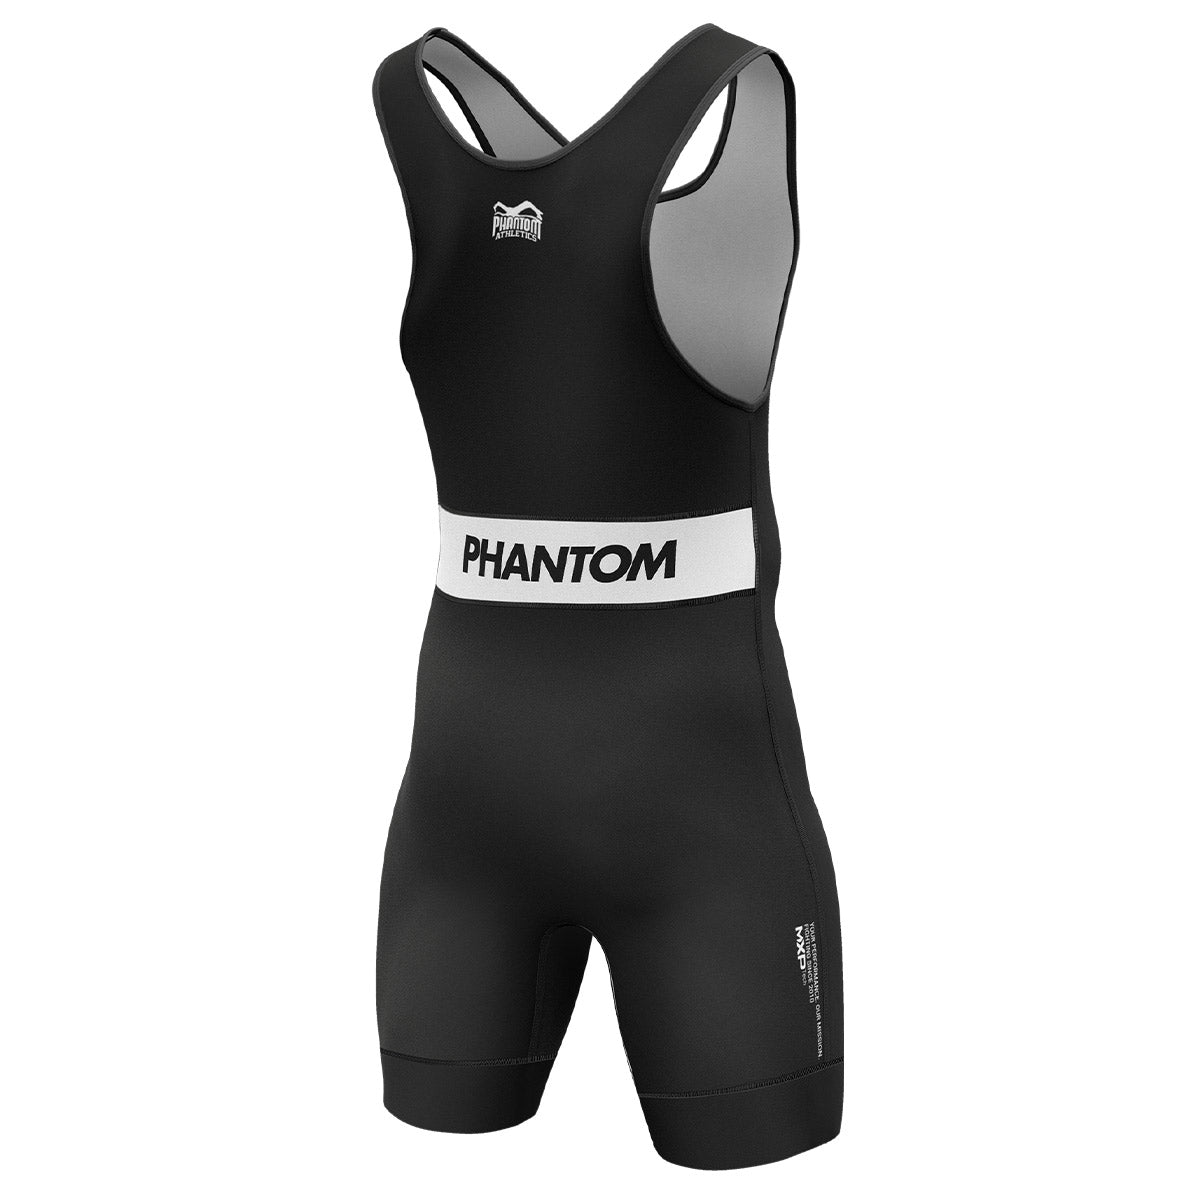 Phantom Ringertrikot Apex in der Farbe Schwarz.  Ideal für dein Ringer Training. In hervorragender Passform und Haltbarkeit. 